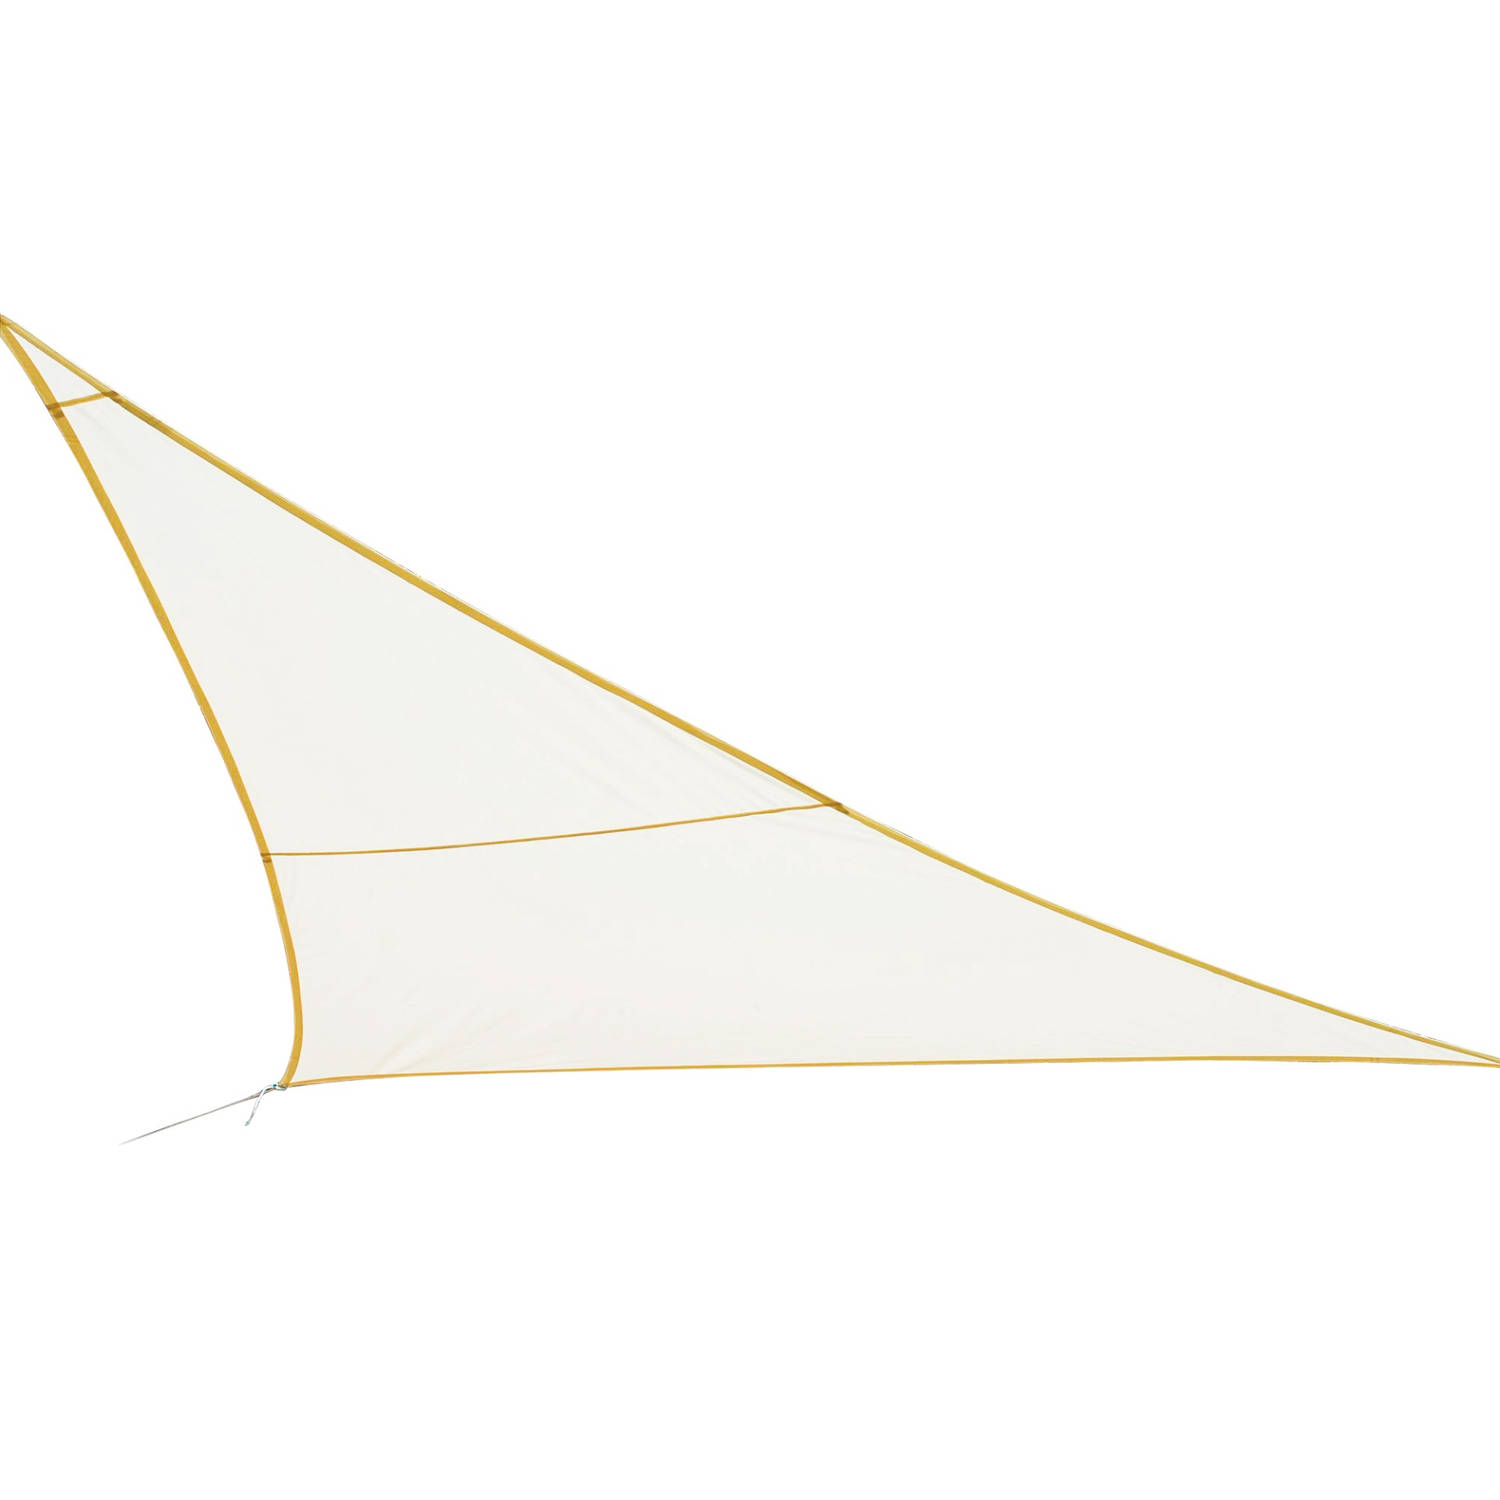 Practo Garden - Schaduwzeil - Driehoek - Polyester - 5 x 5 m - Crème